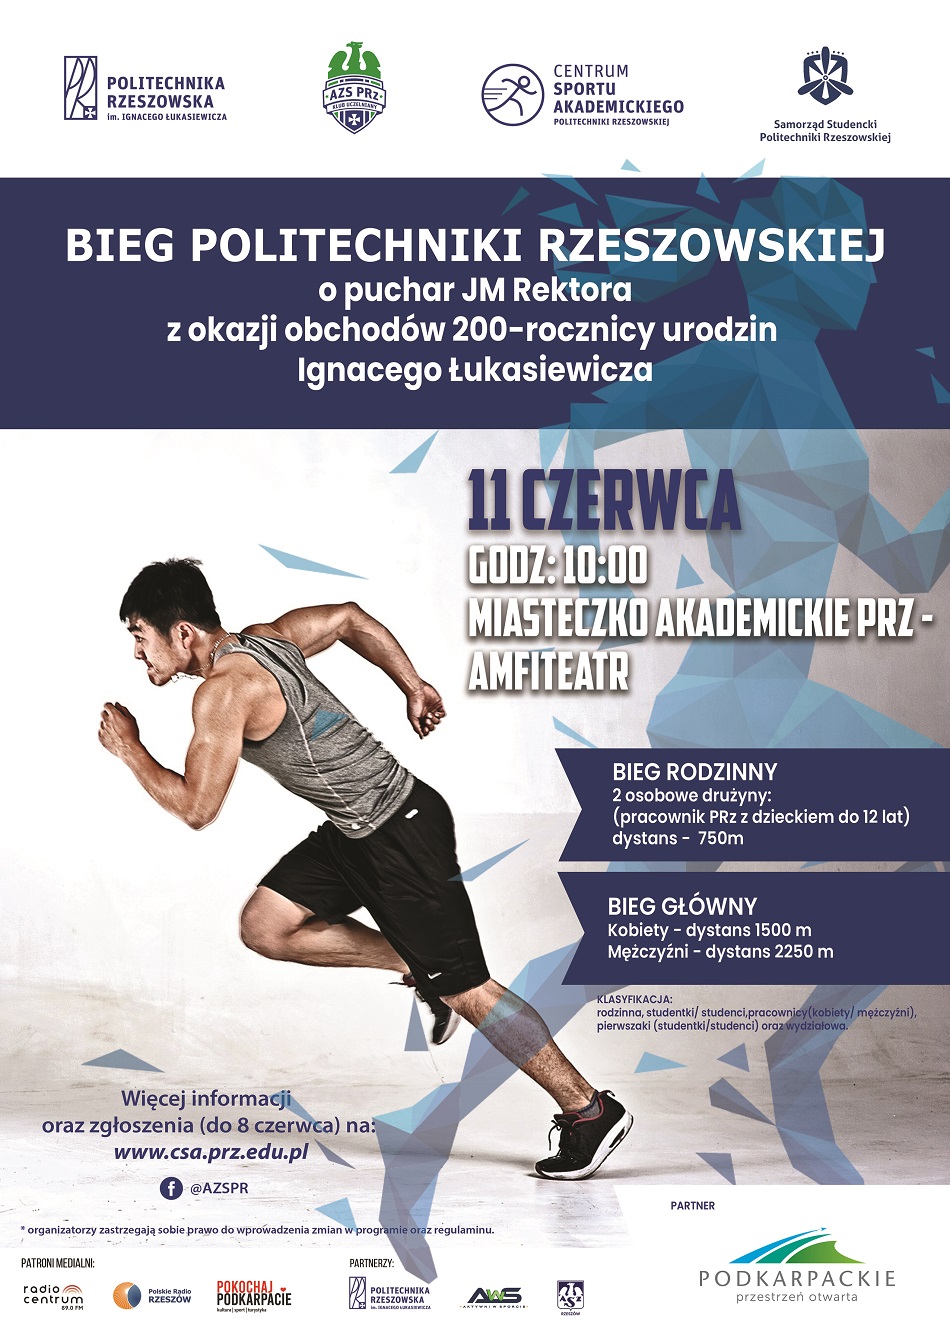 Plakat Biegu Politechniki Rzeszowskiej zawierający informacji opisane w tekście artykułu.